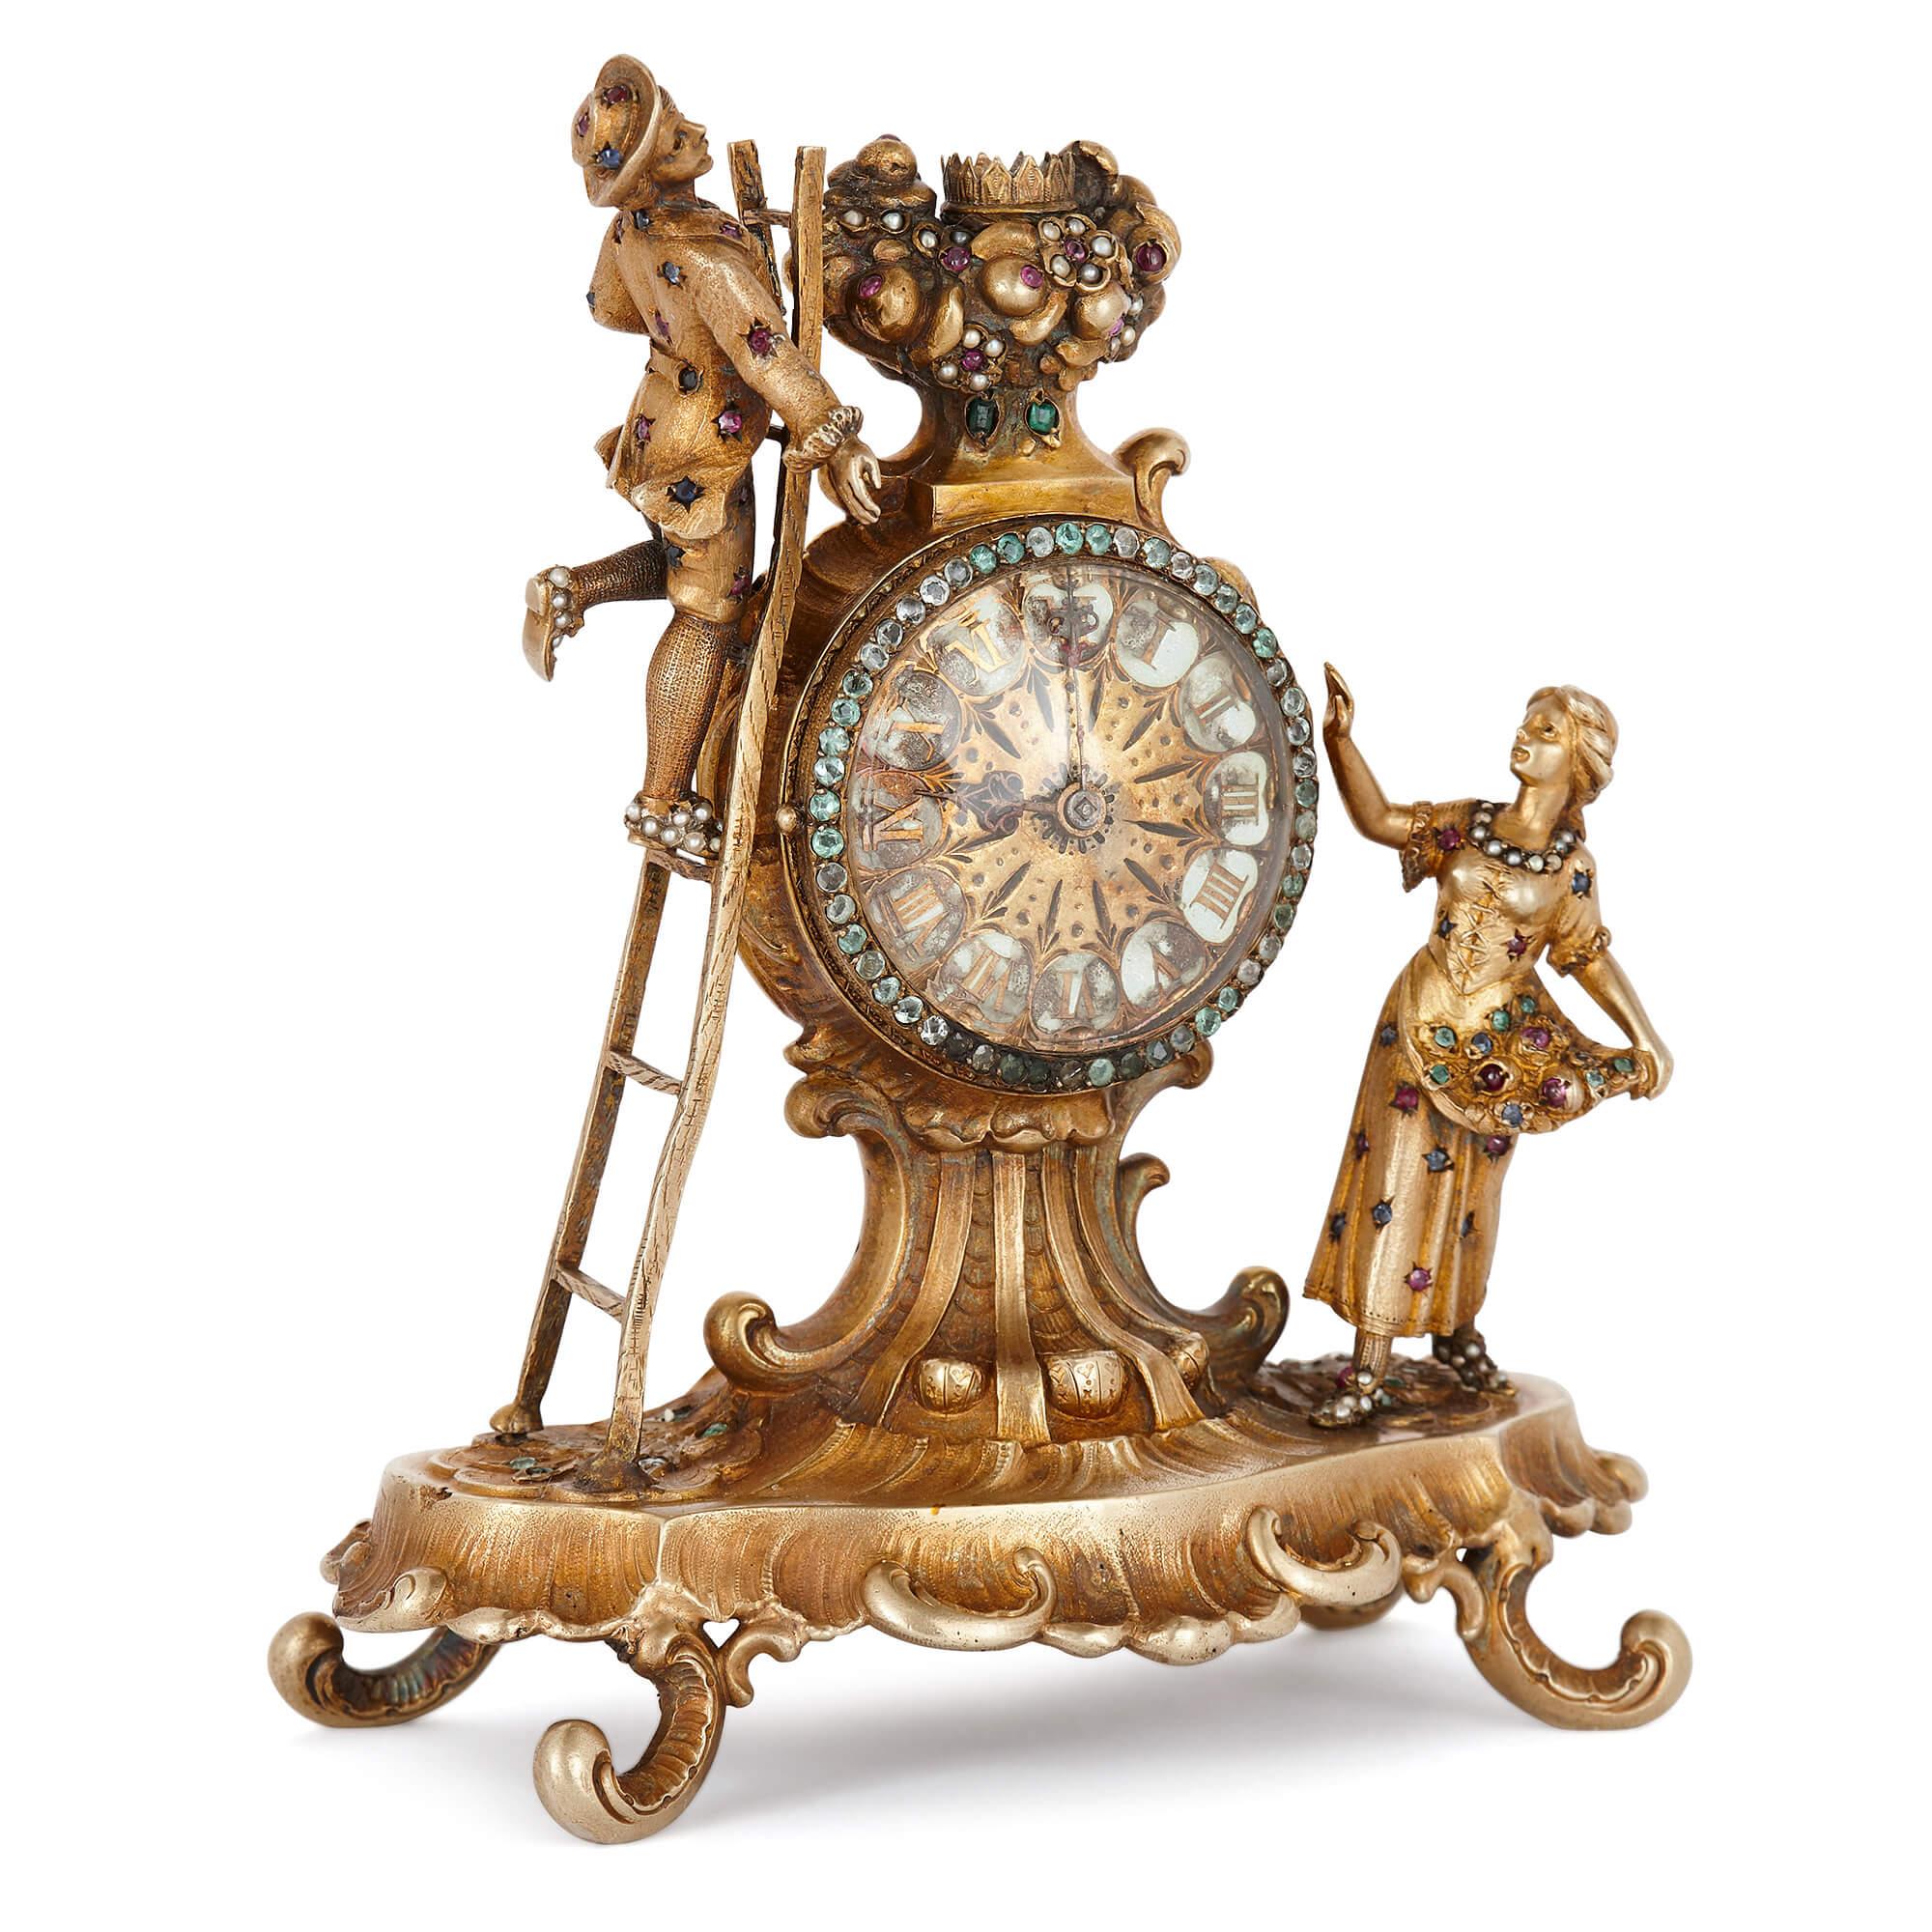 Diese juwelenbesetzte, silbervergoldete antike Tischuhr ist ein erlesenes Stück Wiener Handwerkskunst. Sie besteht aus einem gewölbten Sockel, der auf vier C-förmigen Füßen ruht, und einem gekrönten runden emaillierten Zifferblatt. Das Zifferblatt